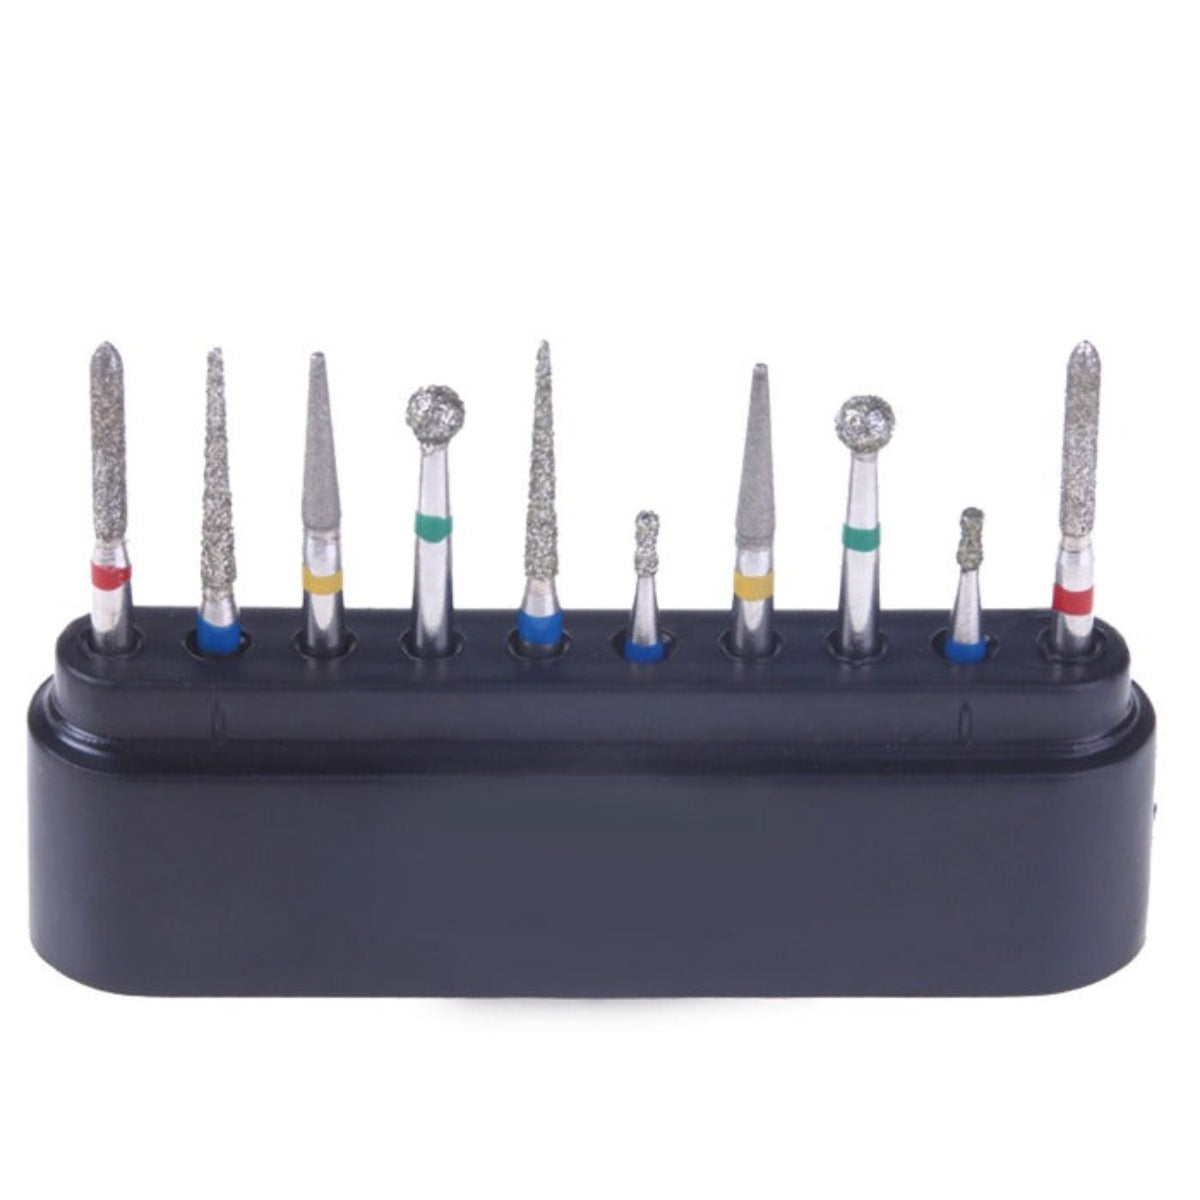 Dental Diamond Bur FG-110 Prepartion Repair Kit 10pcs/Kit - pairaydental.com